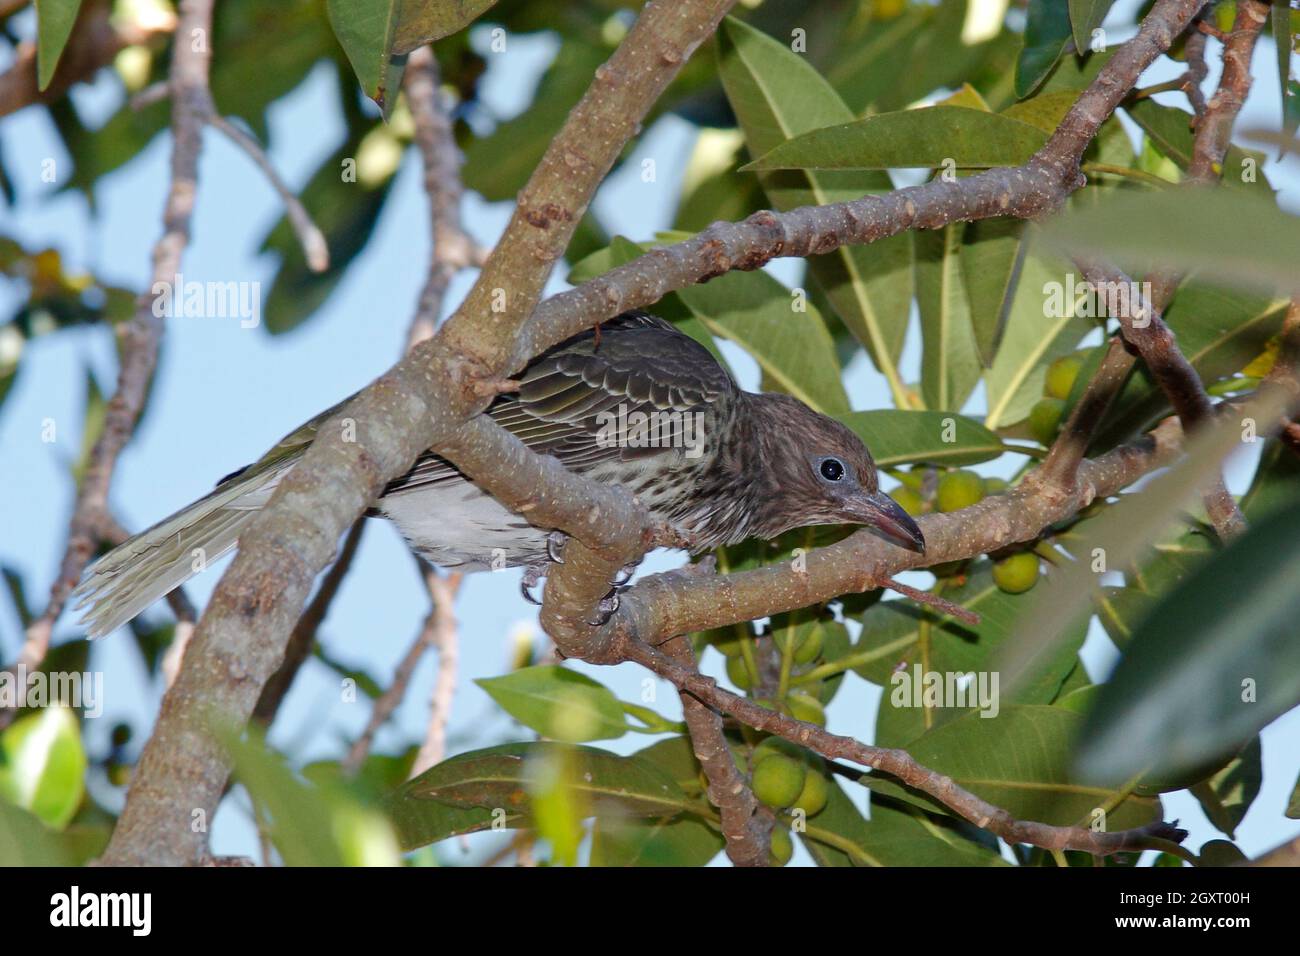 Weibliche Australasian Figbird, Sphecotheres vieeilloti. Auch bekannt als der Grüne Figbird. In einem Figurenbaum. Coffs Harbour, NSW, Australien Stockfoto